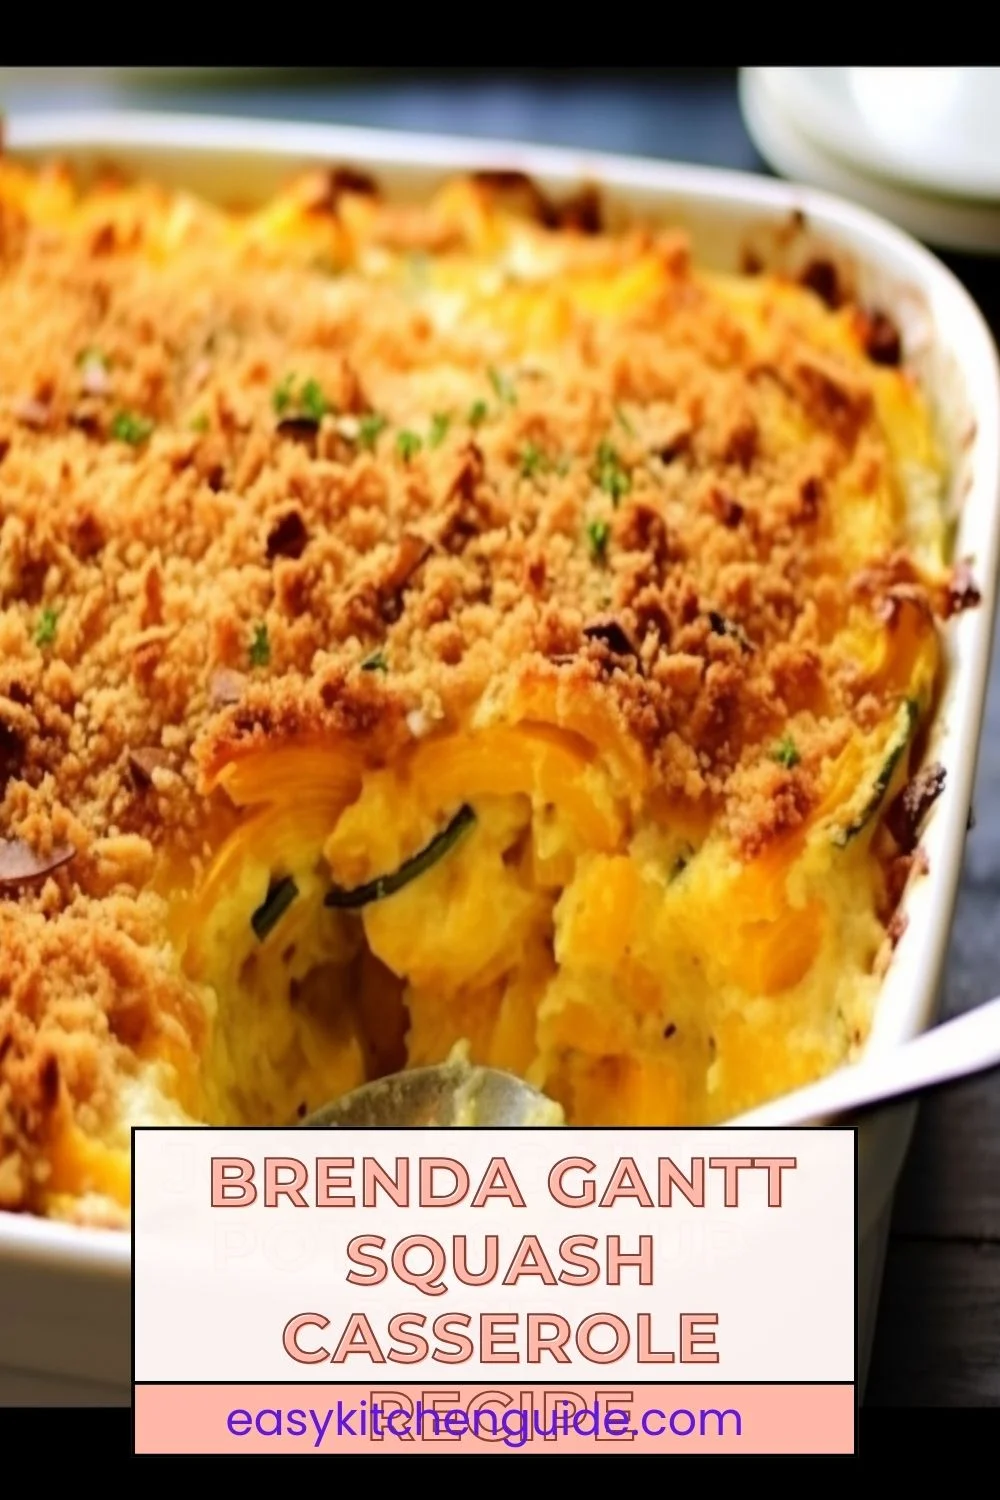 Brenda Gantt Squash Casserole Recipe